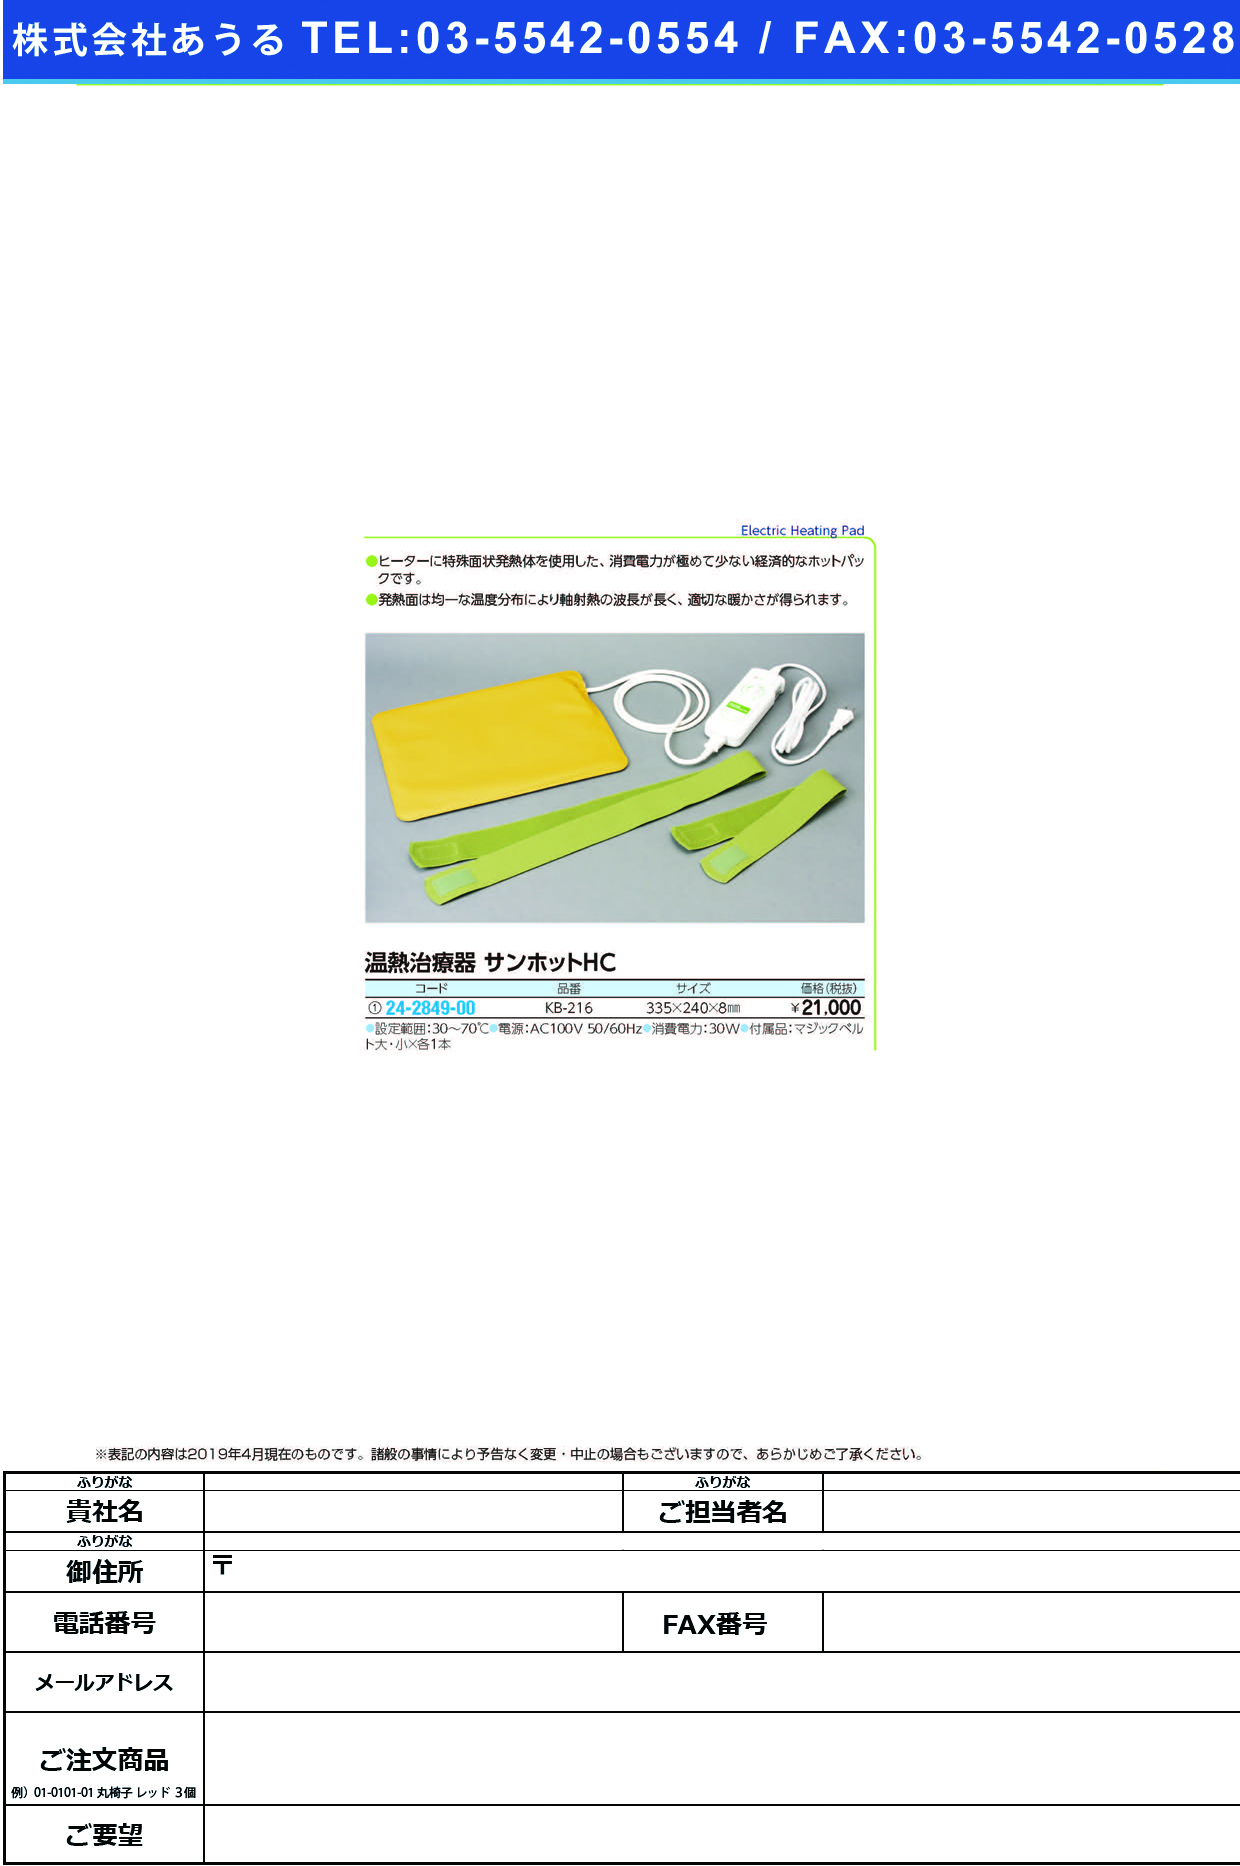 (24-2849-00)温熱治療器サンホットＨＣ KB-216 ｵﾝﾈﾂﾁﾘｮｳｷｻﾝﾎｯﾄHC【1台単位】【2019年カタログ商品】